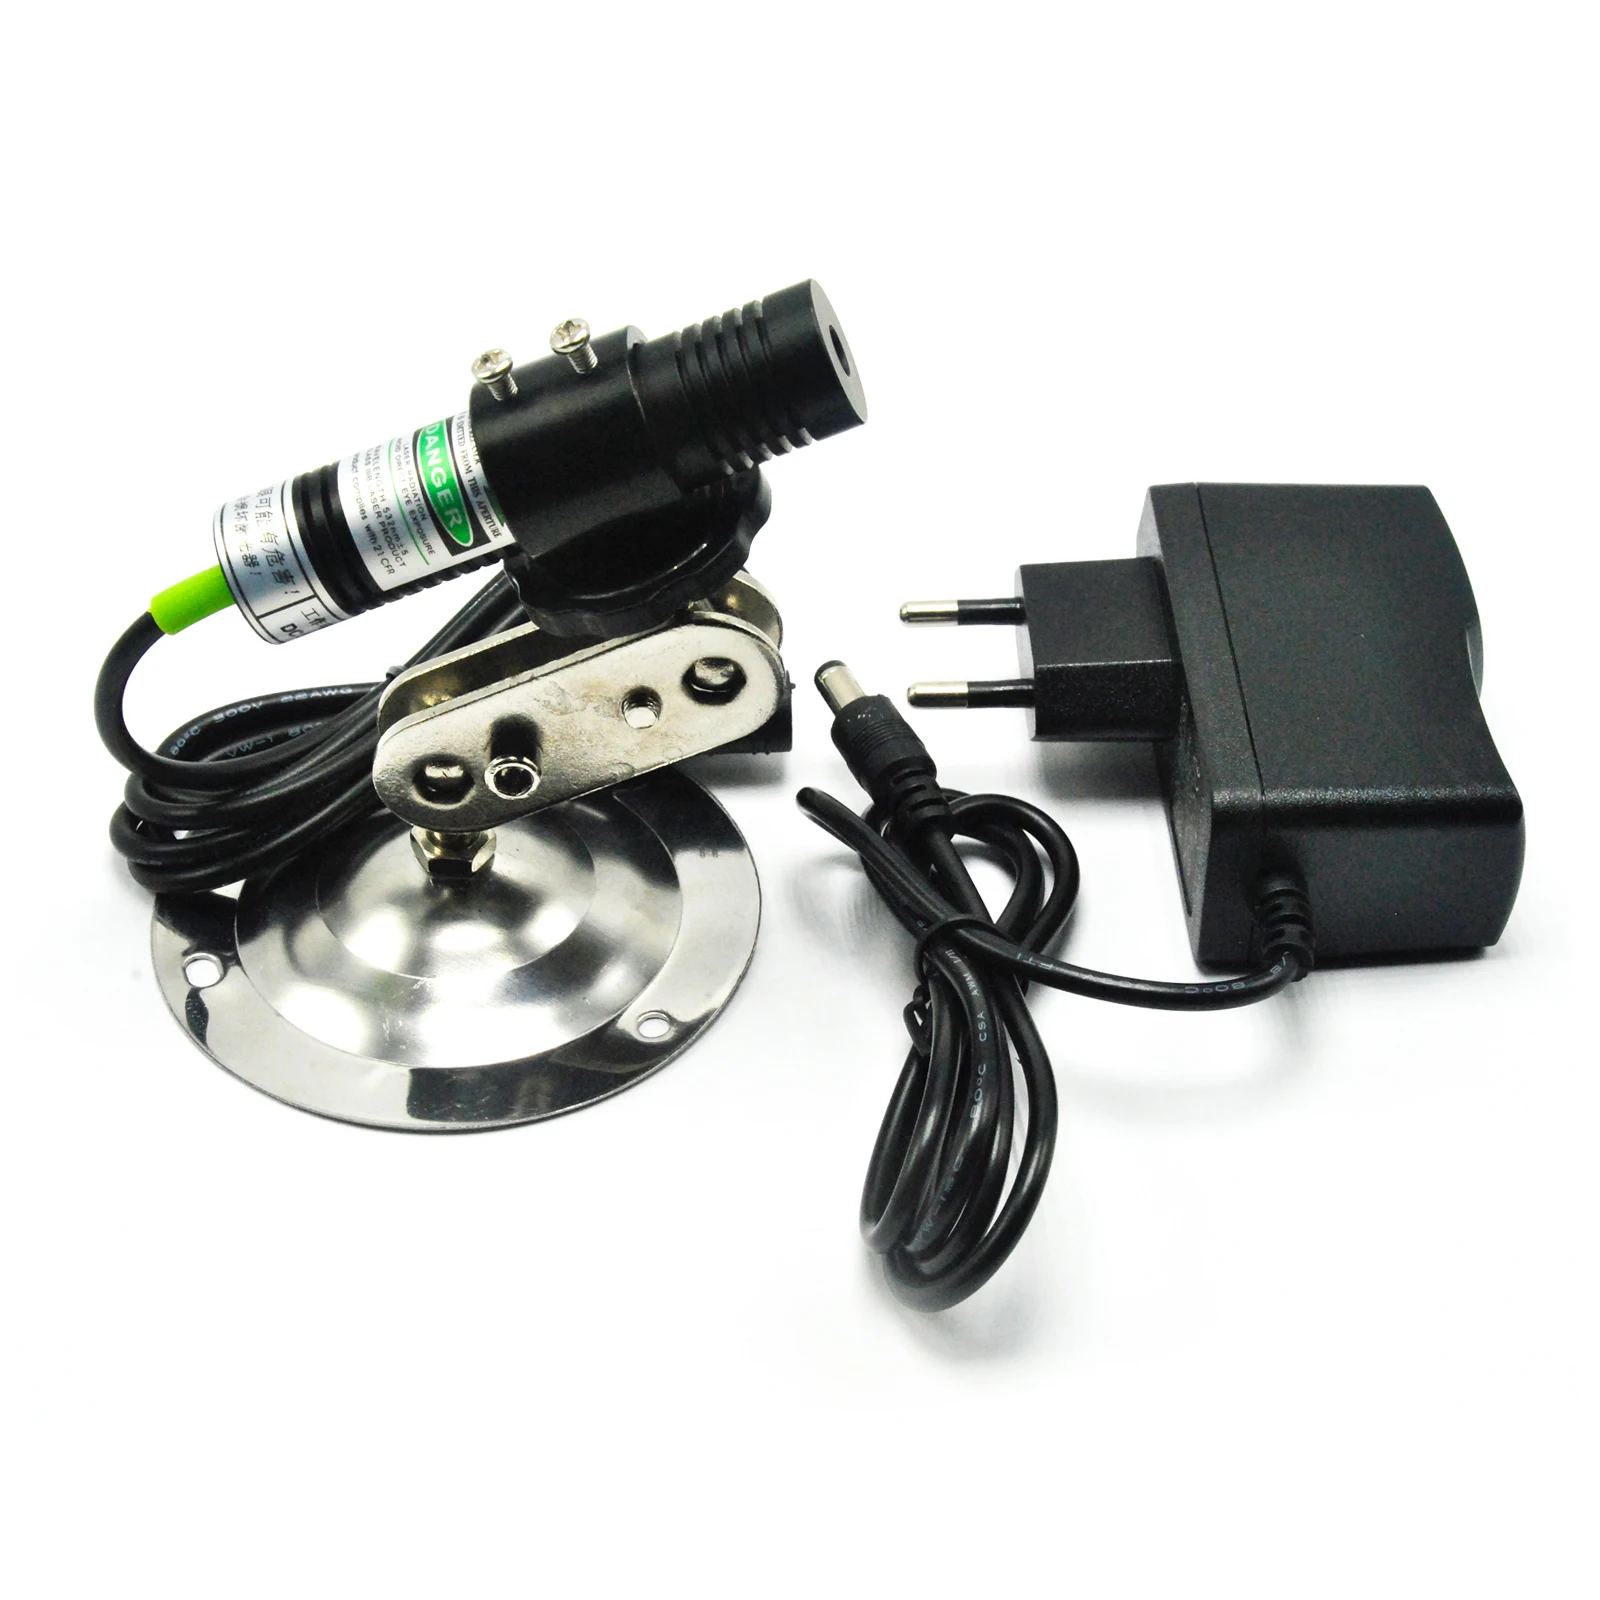 Зеленый лазерный диодный точечный генератор, модуль для выравнивания, локатор, режущий аппарат, эффекты освещения по дереву, адаптер и держ... от AliExpress RU&CIS NEW